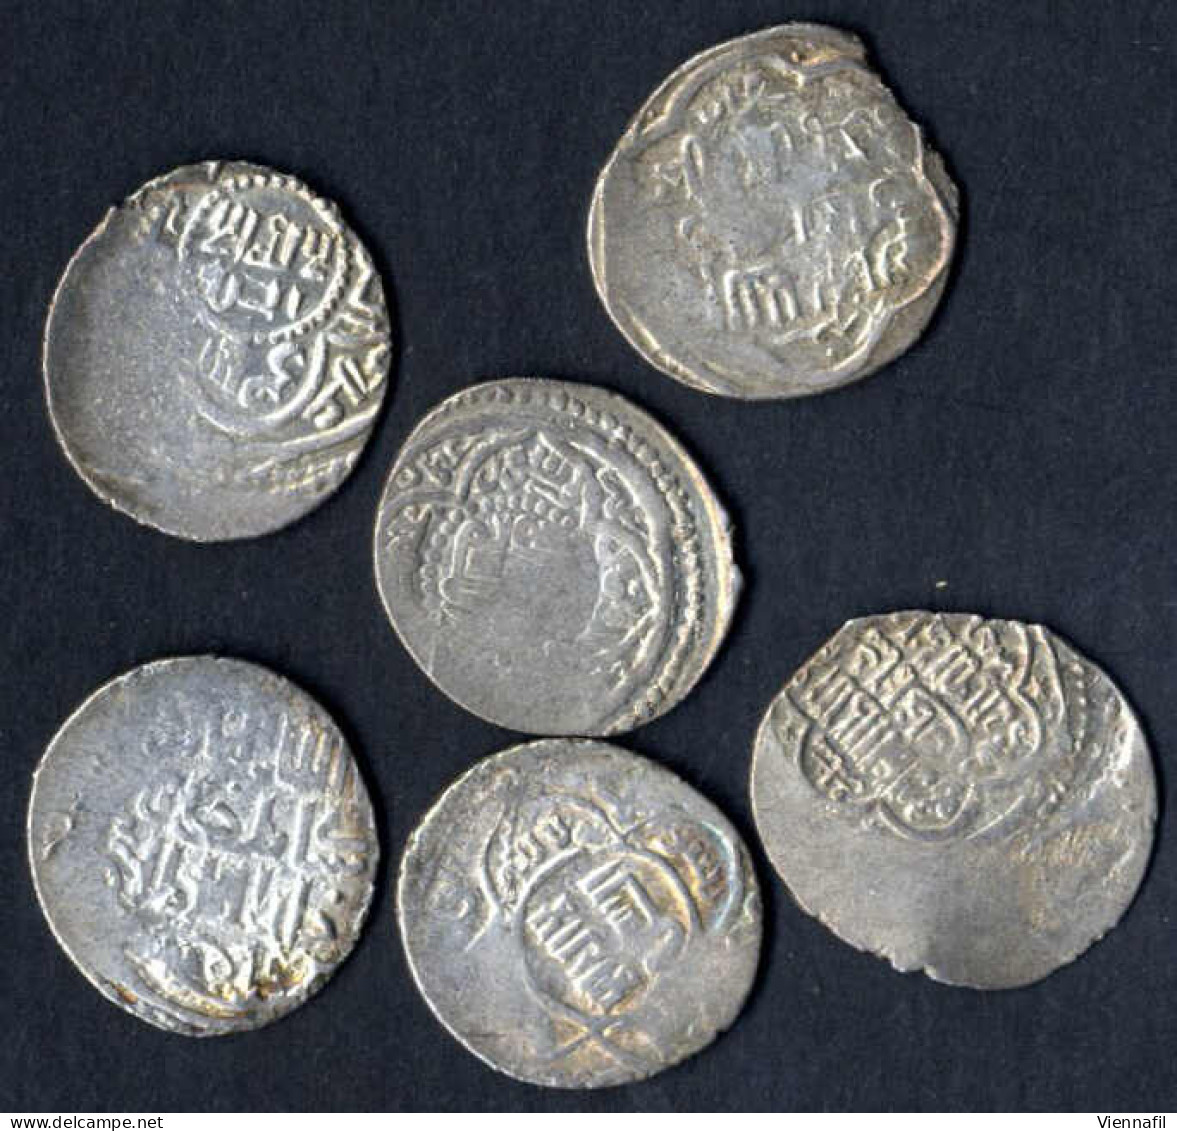 Sati Beg, 739-740AH 1339-1340, Doppeldirham 9. Ausgabe Silber, Ohne Jahr Hisn, Mich 1710, Sehr Schön-, 6 Stück, Selten - Islamische Münzen